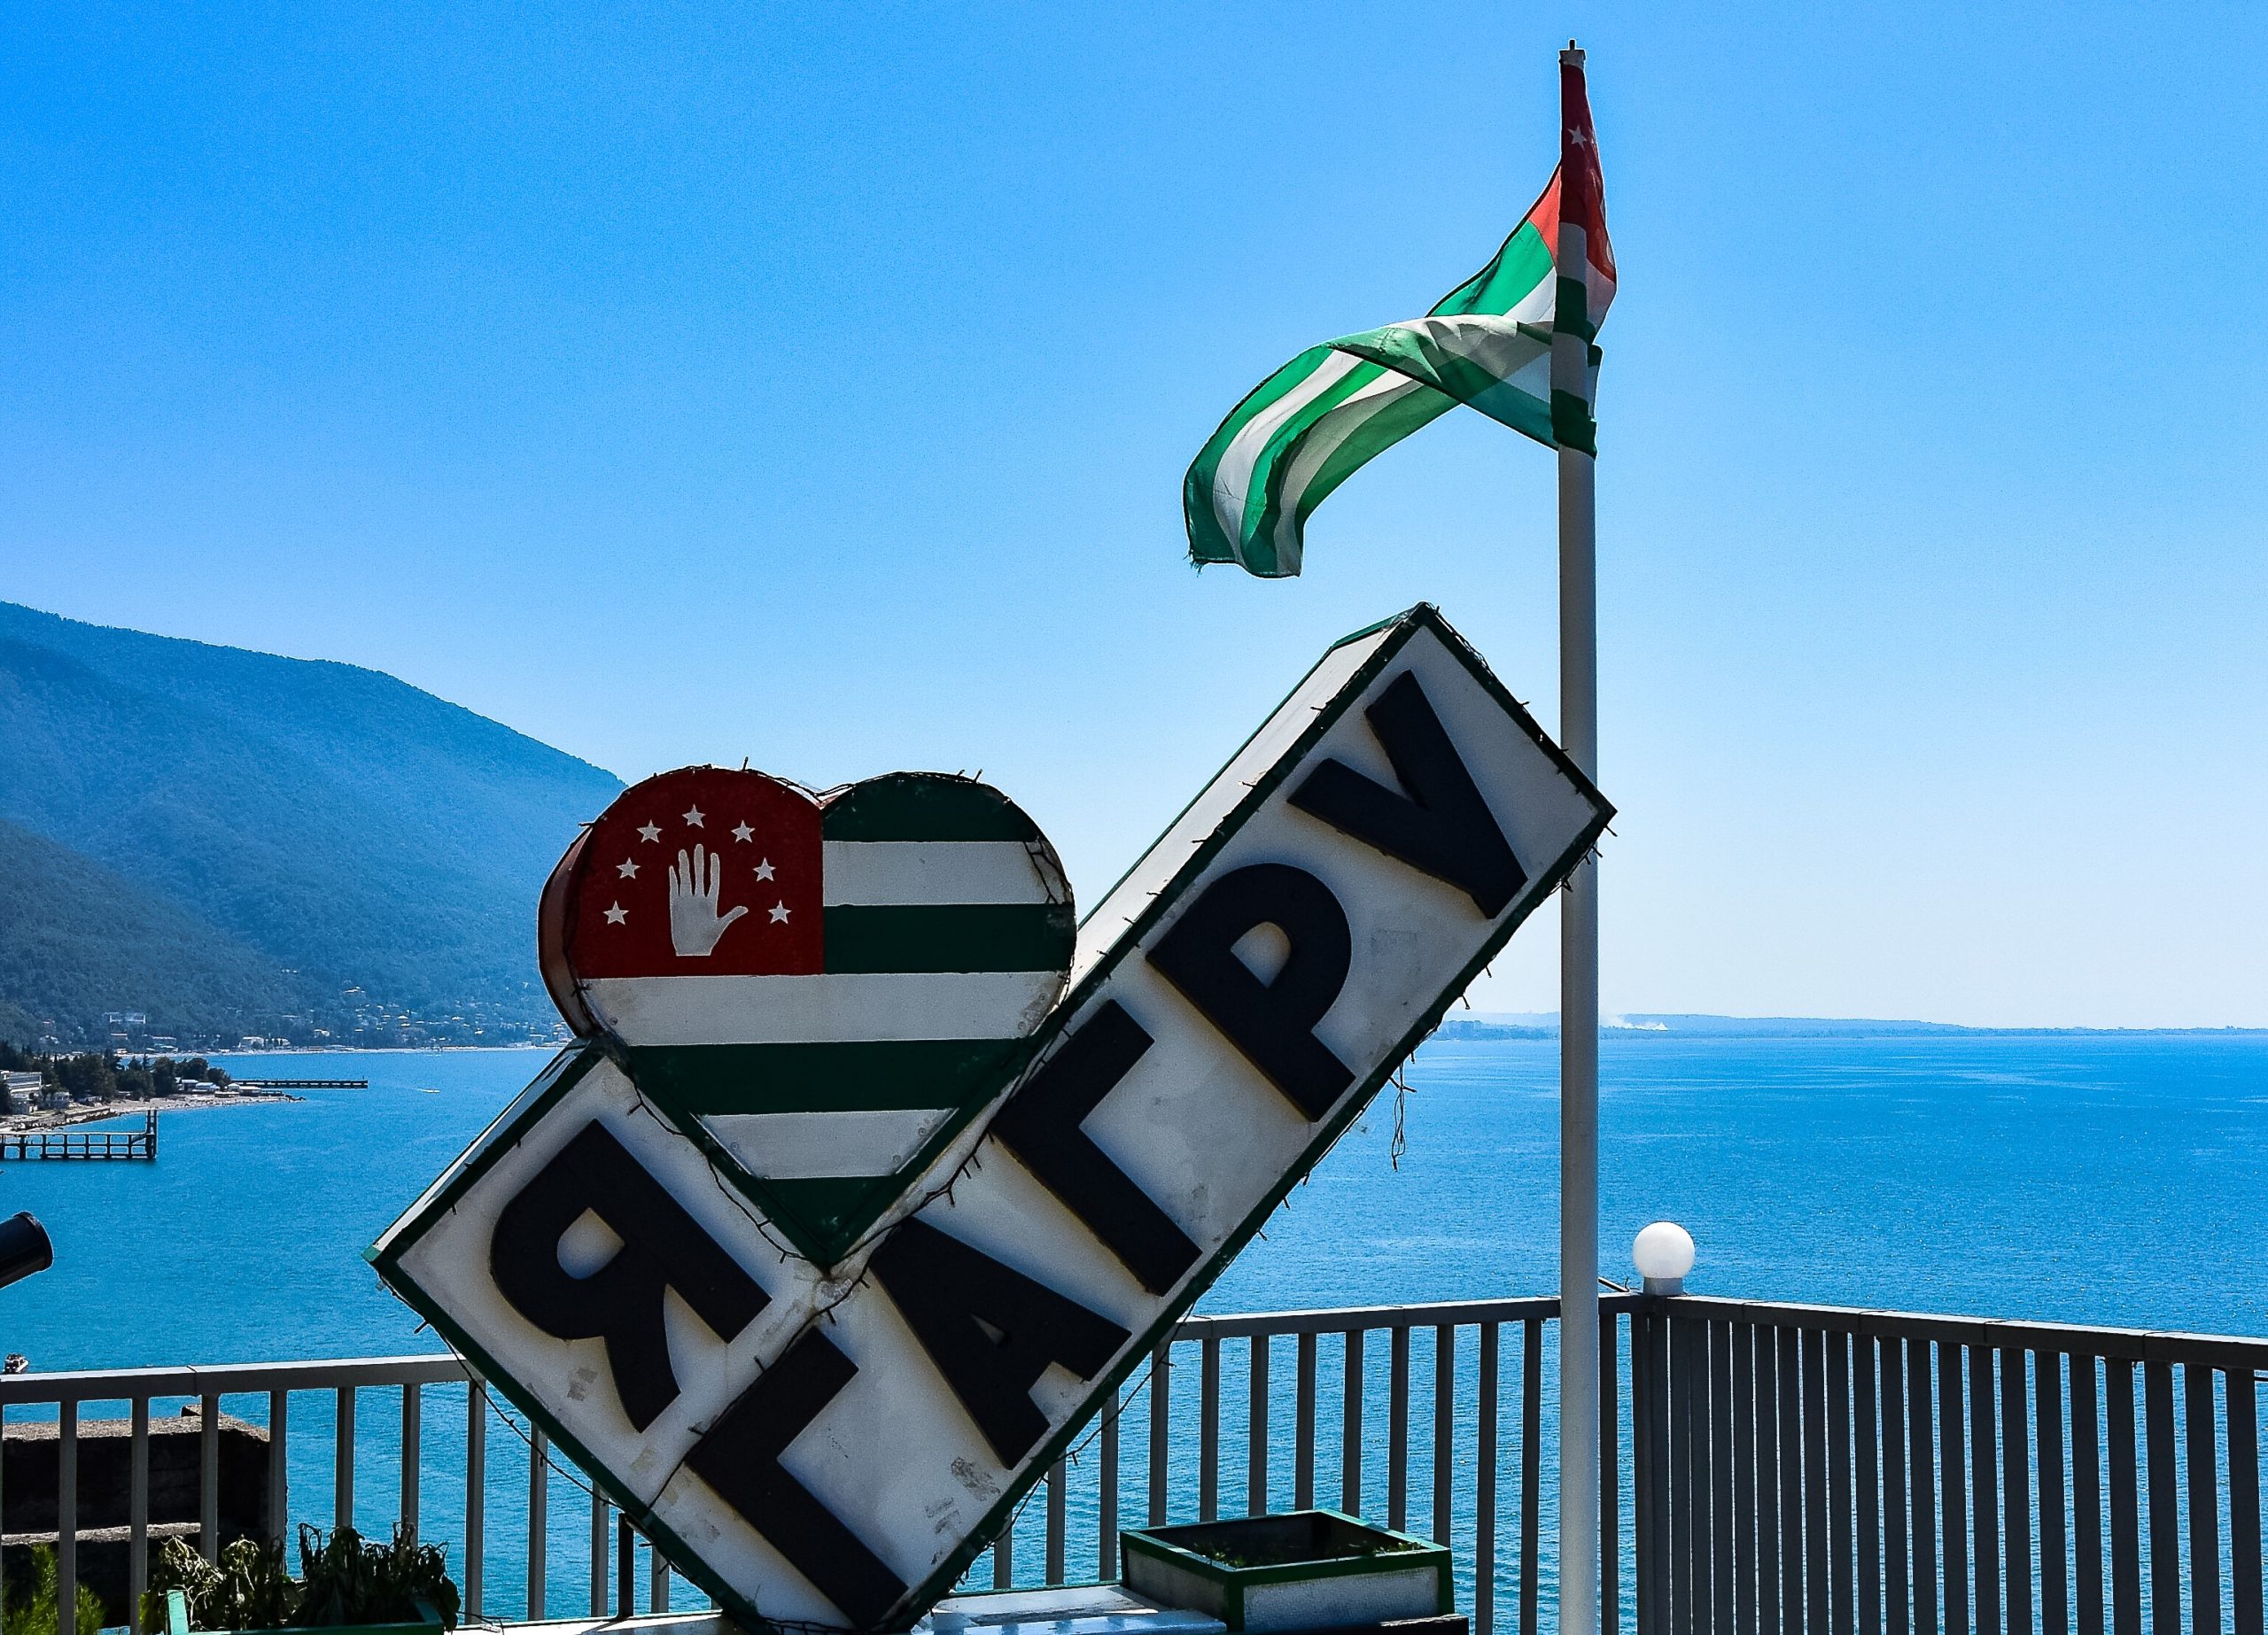 GAGRA, ABKHAZIA: 2019. View of the Black Sea and the flag of Abkhazia.